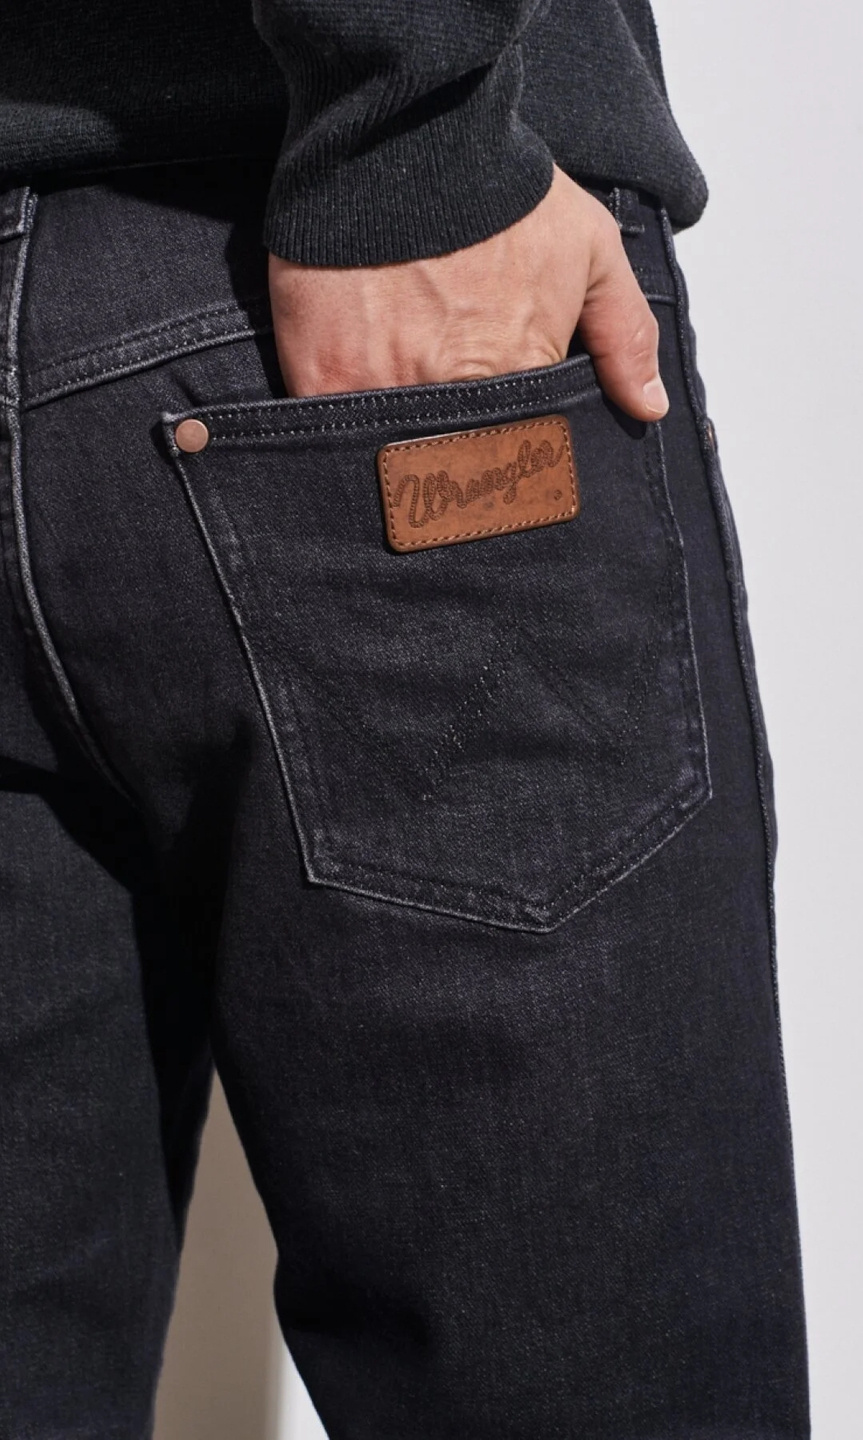 Wrangler Greensboro Slim Fit Denim Jeans, Black, 30R